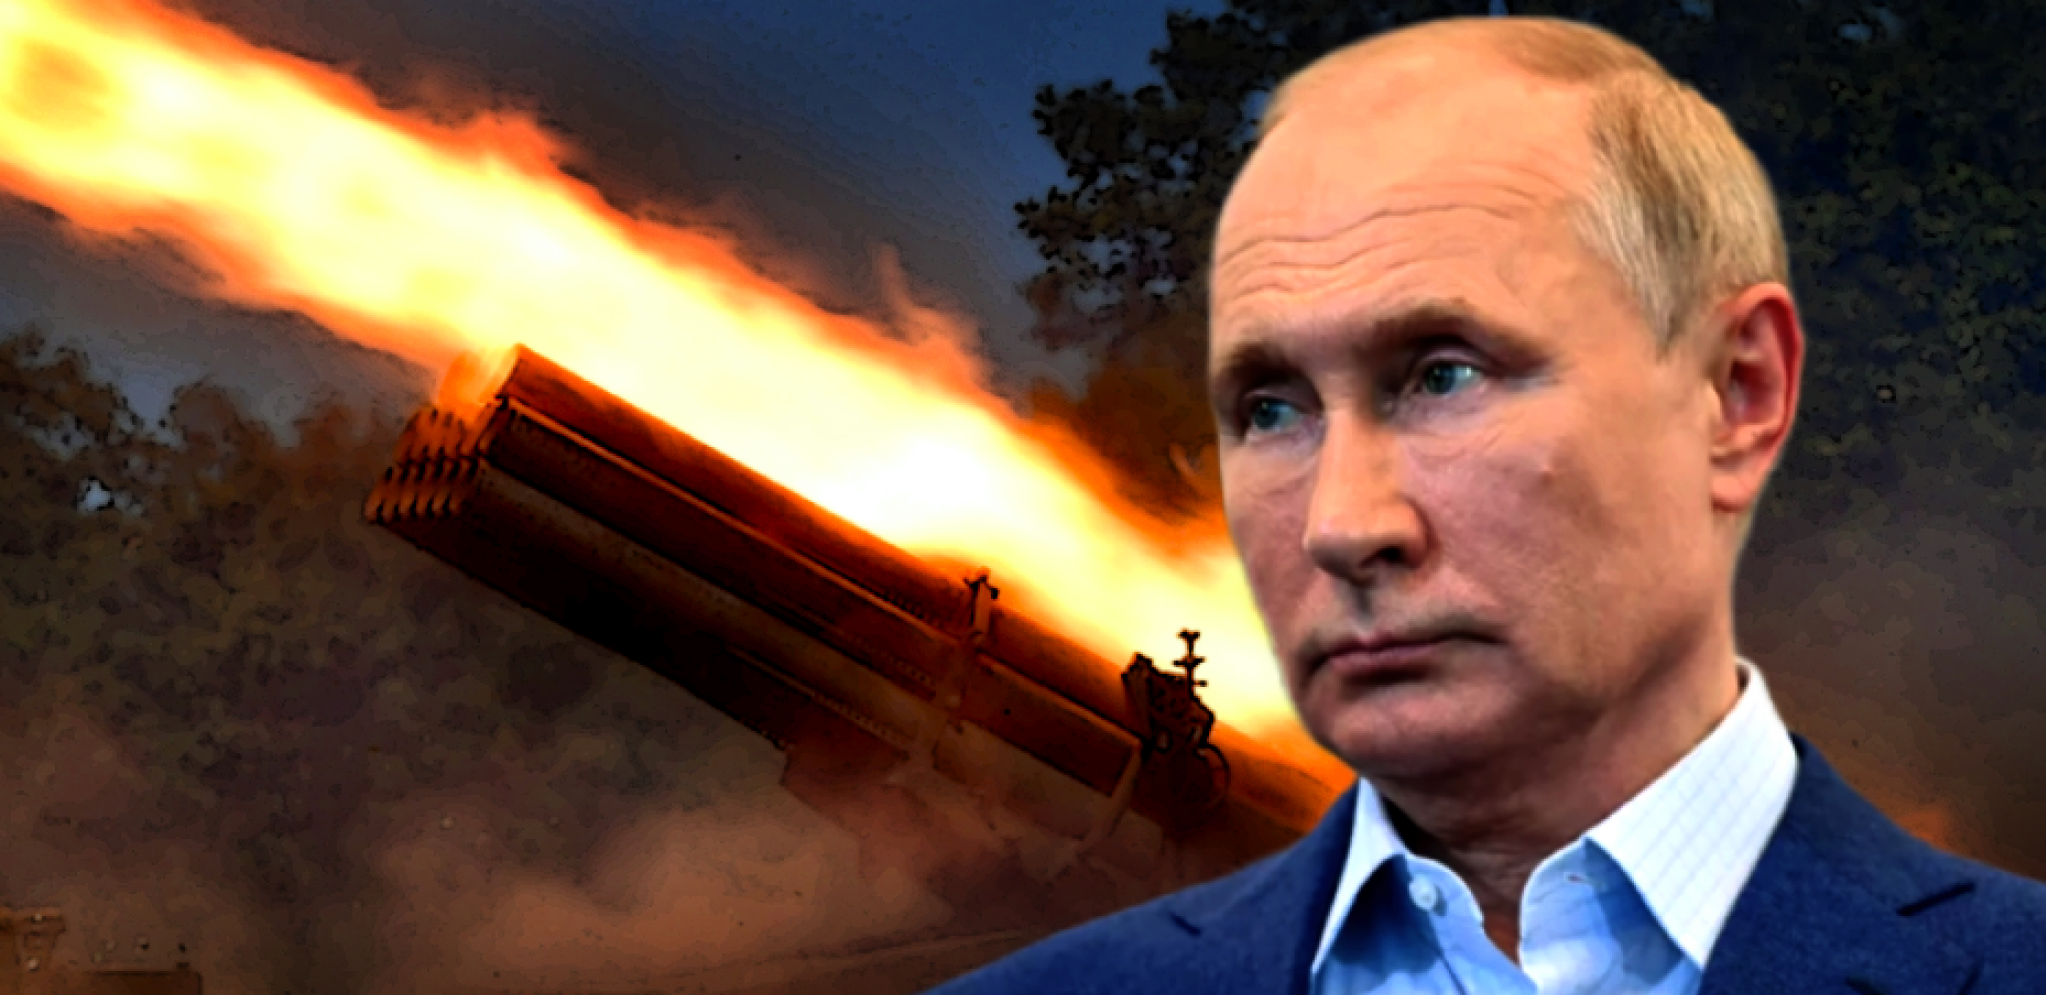 SJEDINJENE DRŽAVE SU DONELE OPASNU ODLUKU Putin sada ima pravo da OVO uradi?